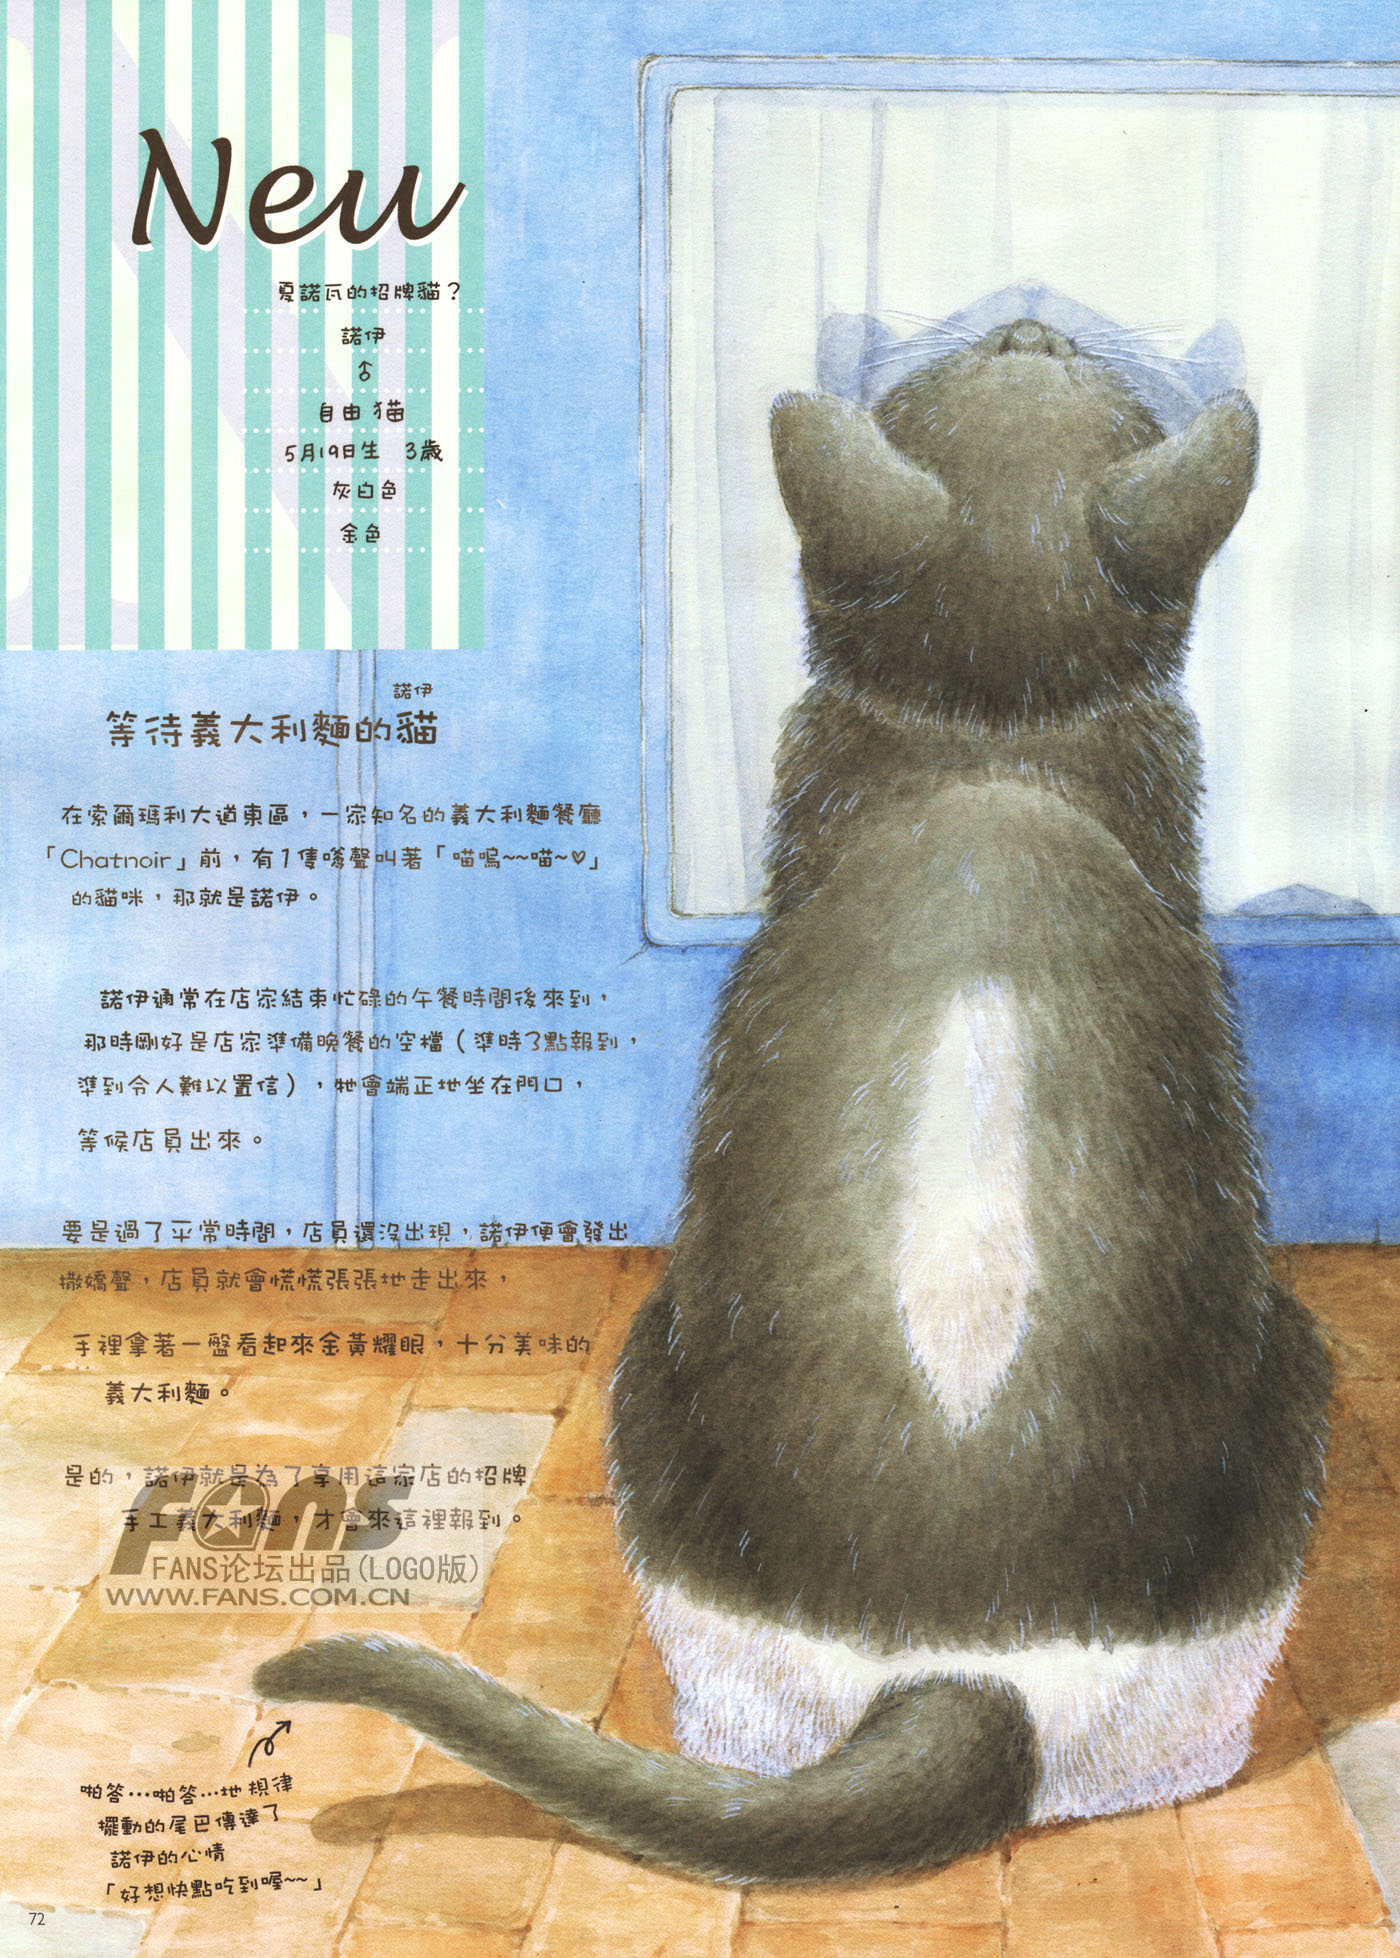 猫漫画图片大全(3)-猫猫萌图-屈阿零可爱屋